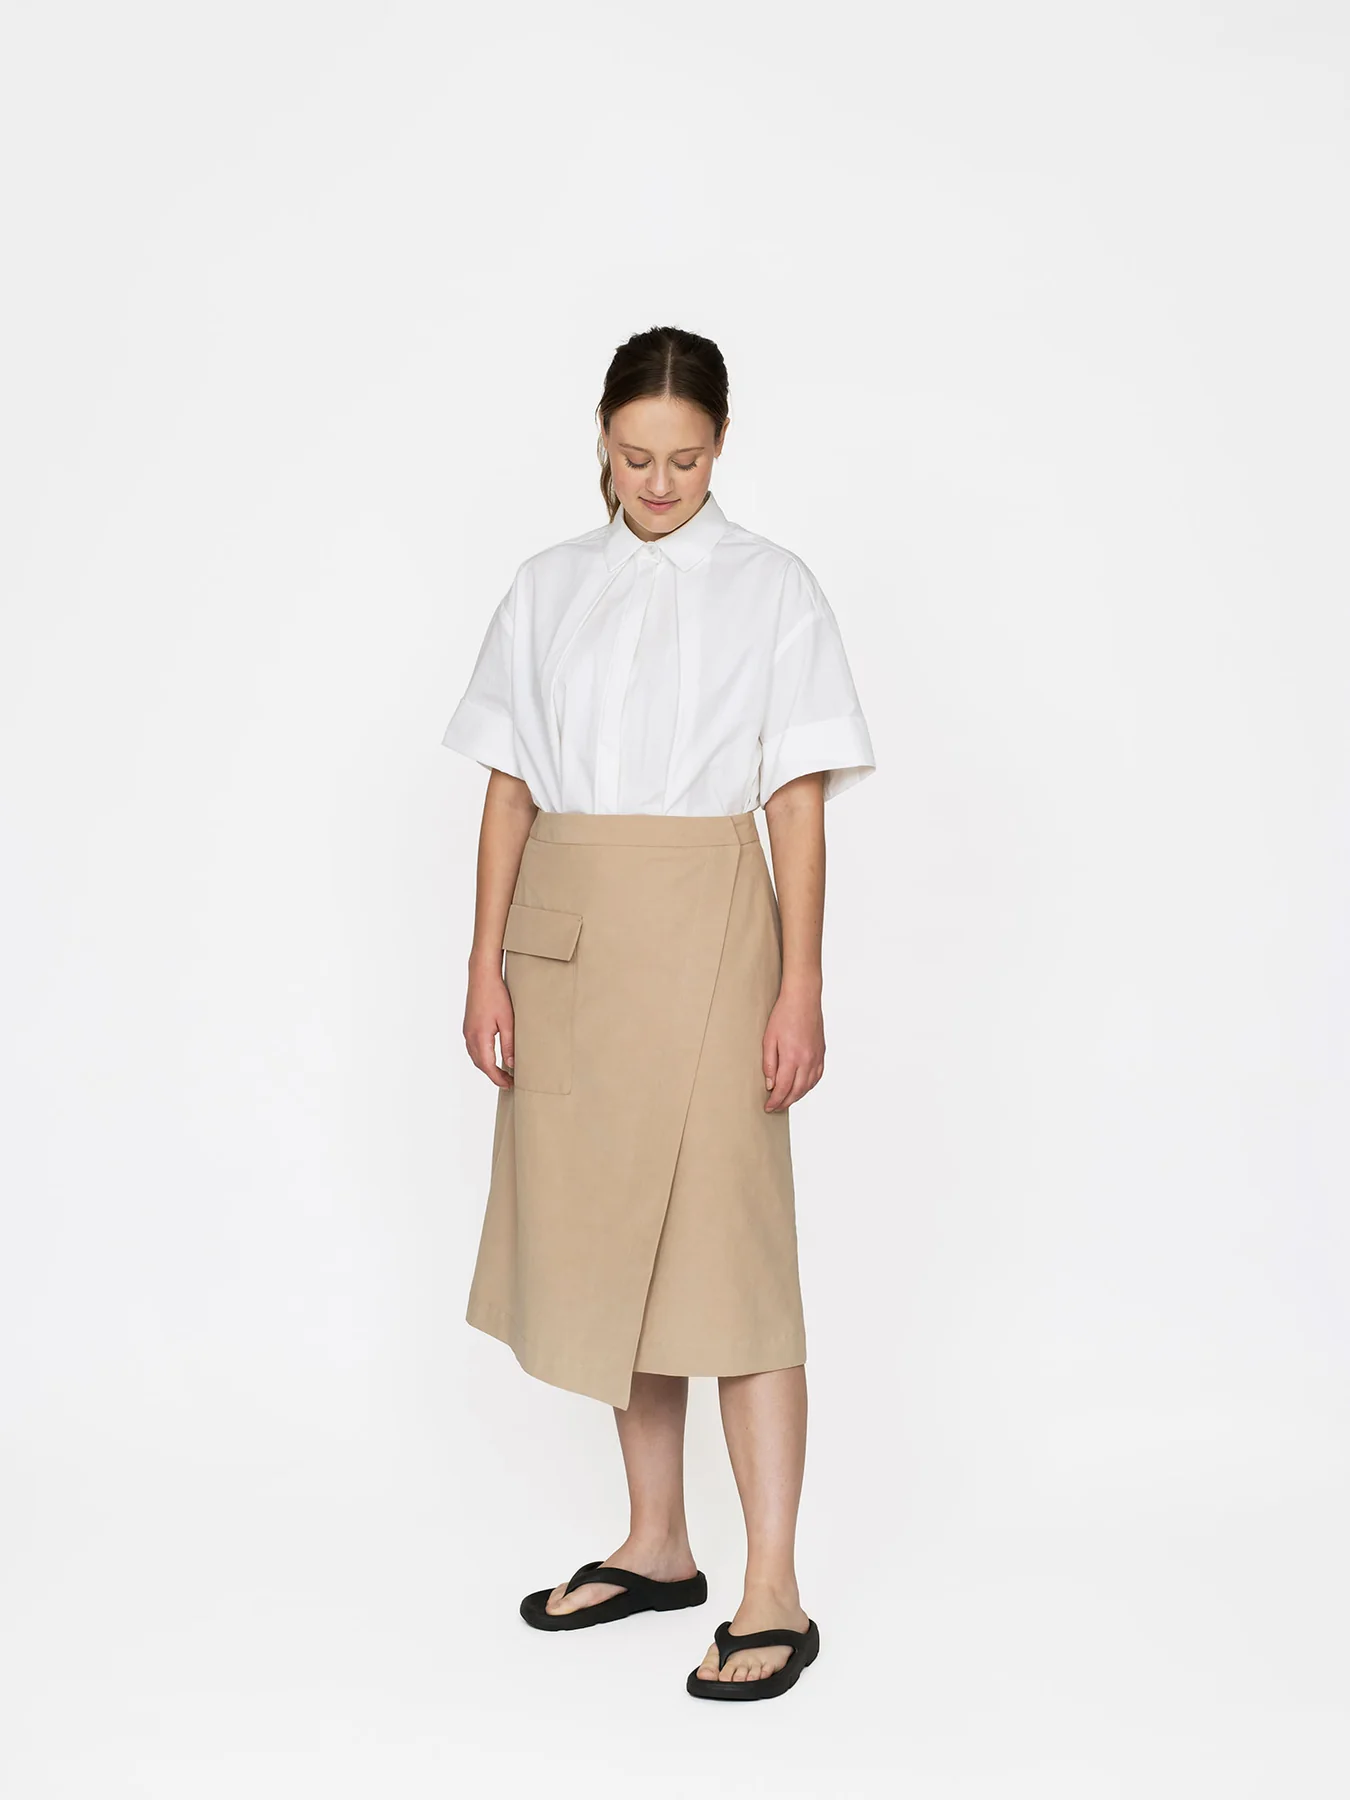 Asymmetric midi skirt (XL-3XL)